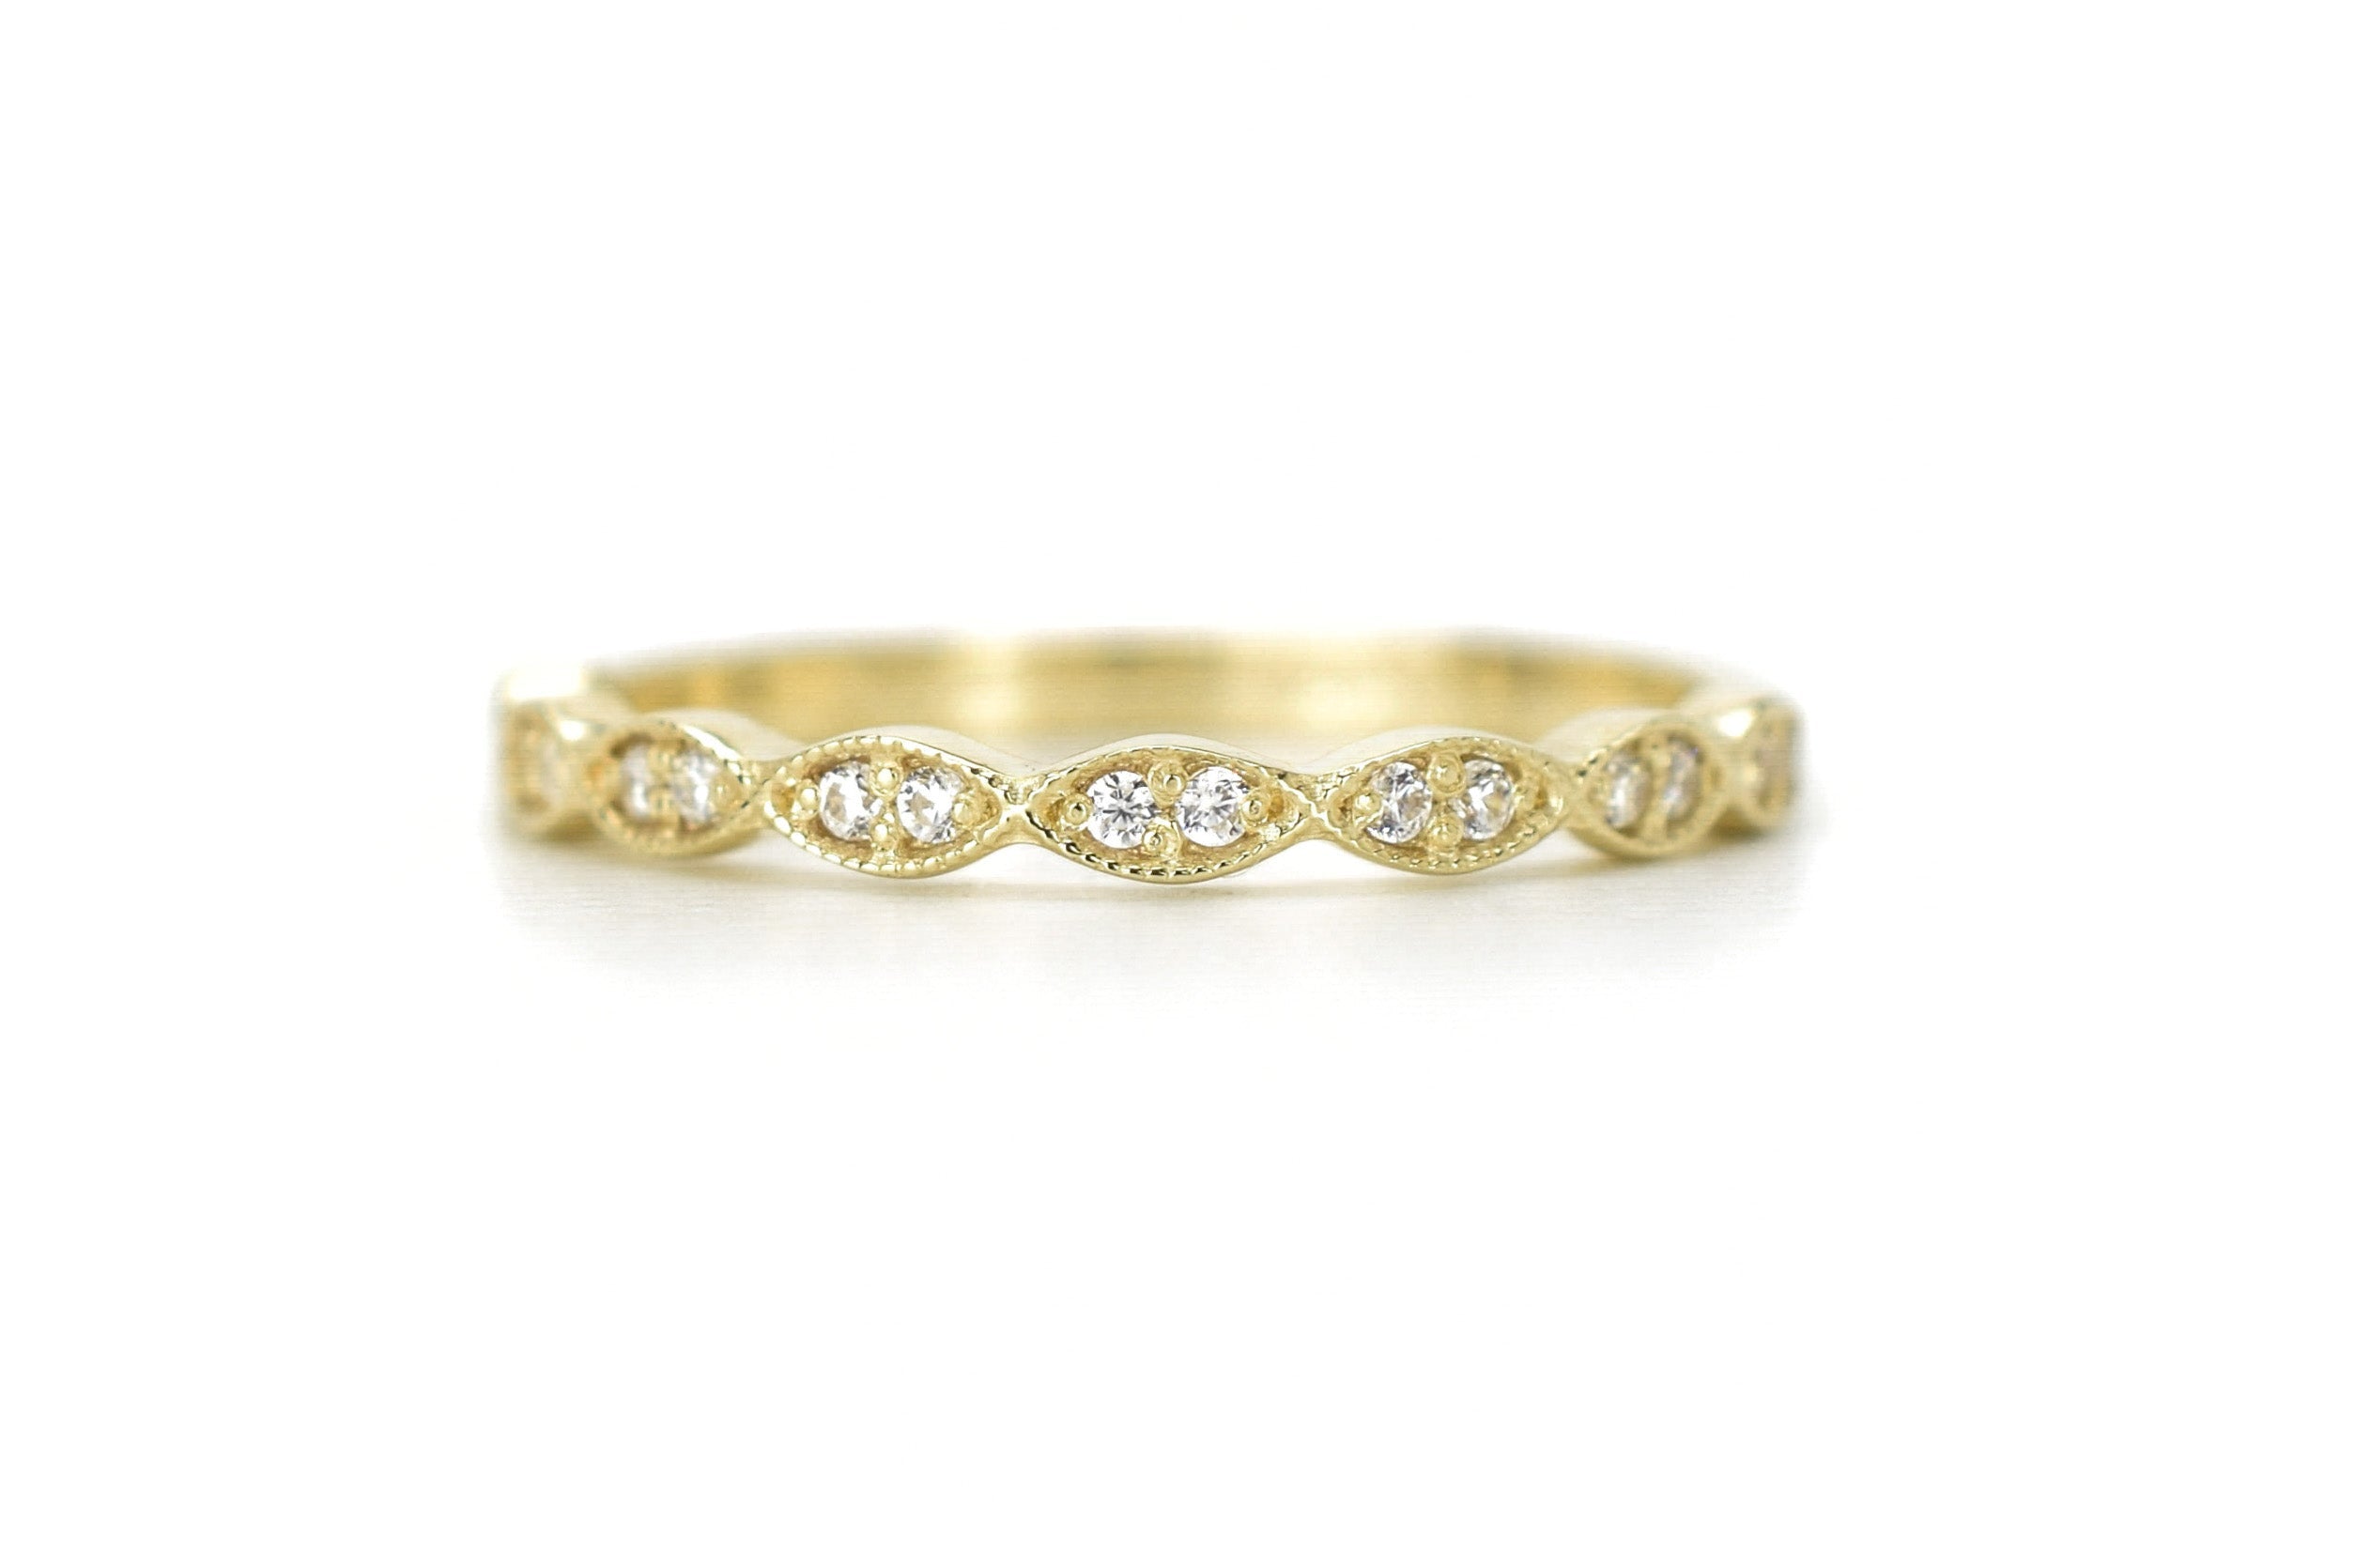 14k goud pink ring, vintage ring, 14k vintage ring, pinky ring gold, art deco ring goud, gouden kleine ring